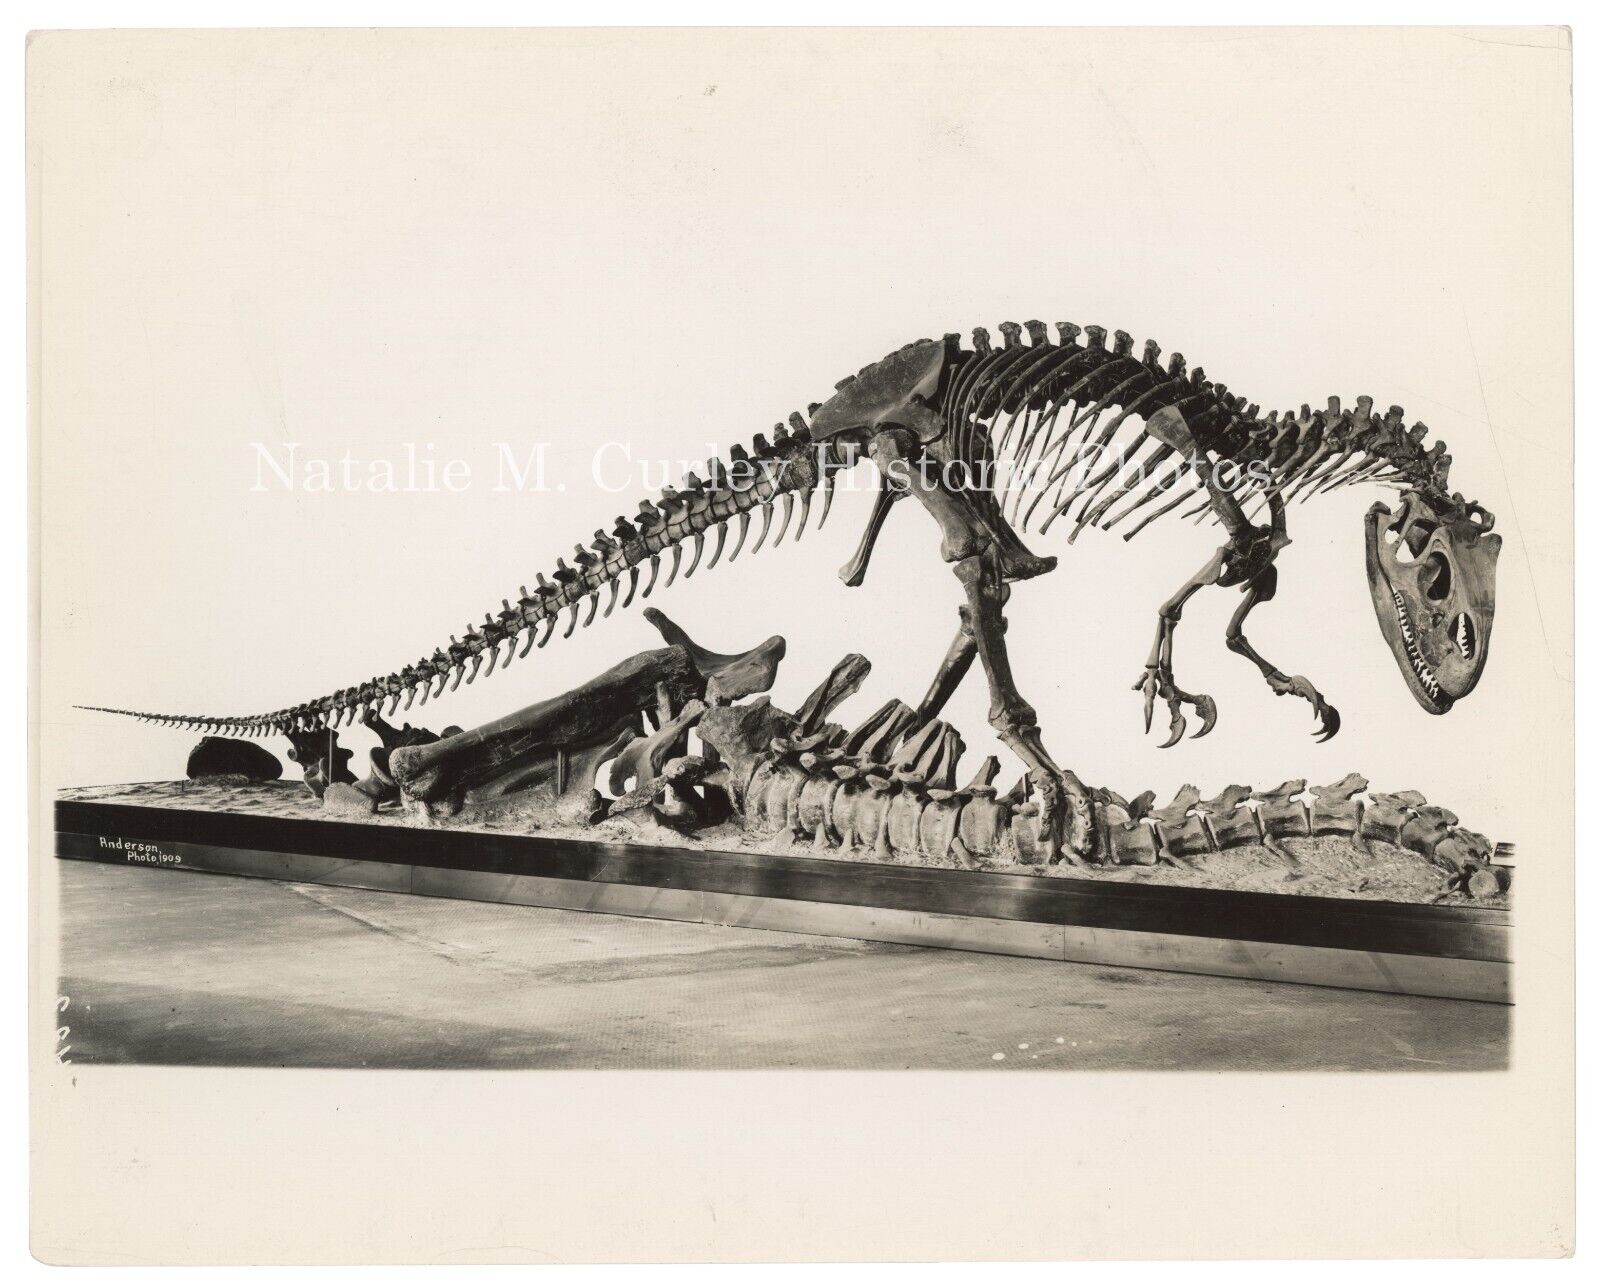 PR 1930s Dinosaur Skeleton Museum Fossil Displays NYC Press Photos